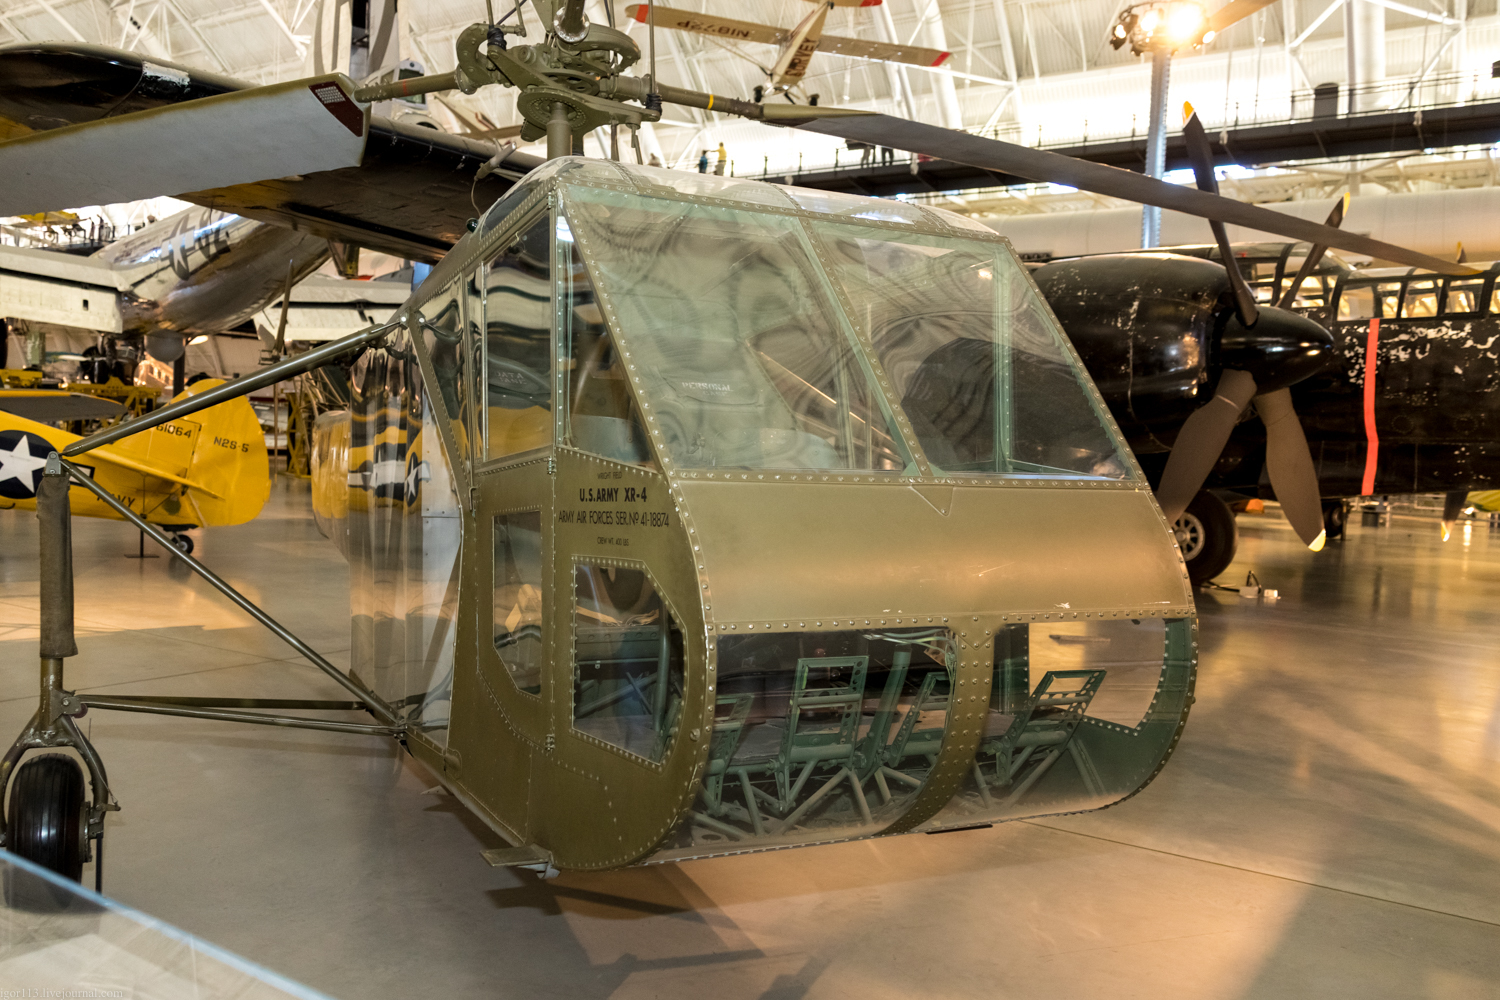  Steven f udvar-hazy center,2018 год: первый в мире серийный вертолет Sikorsky 